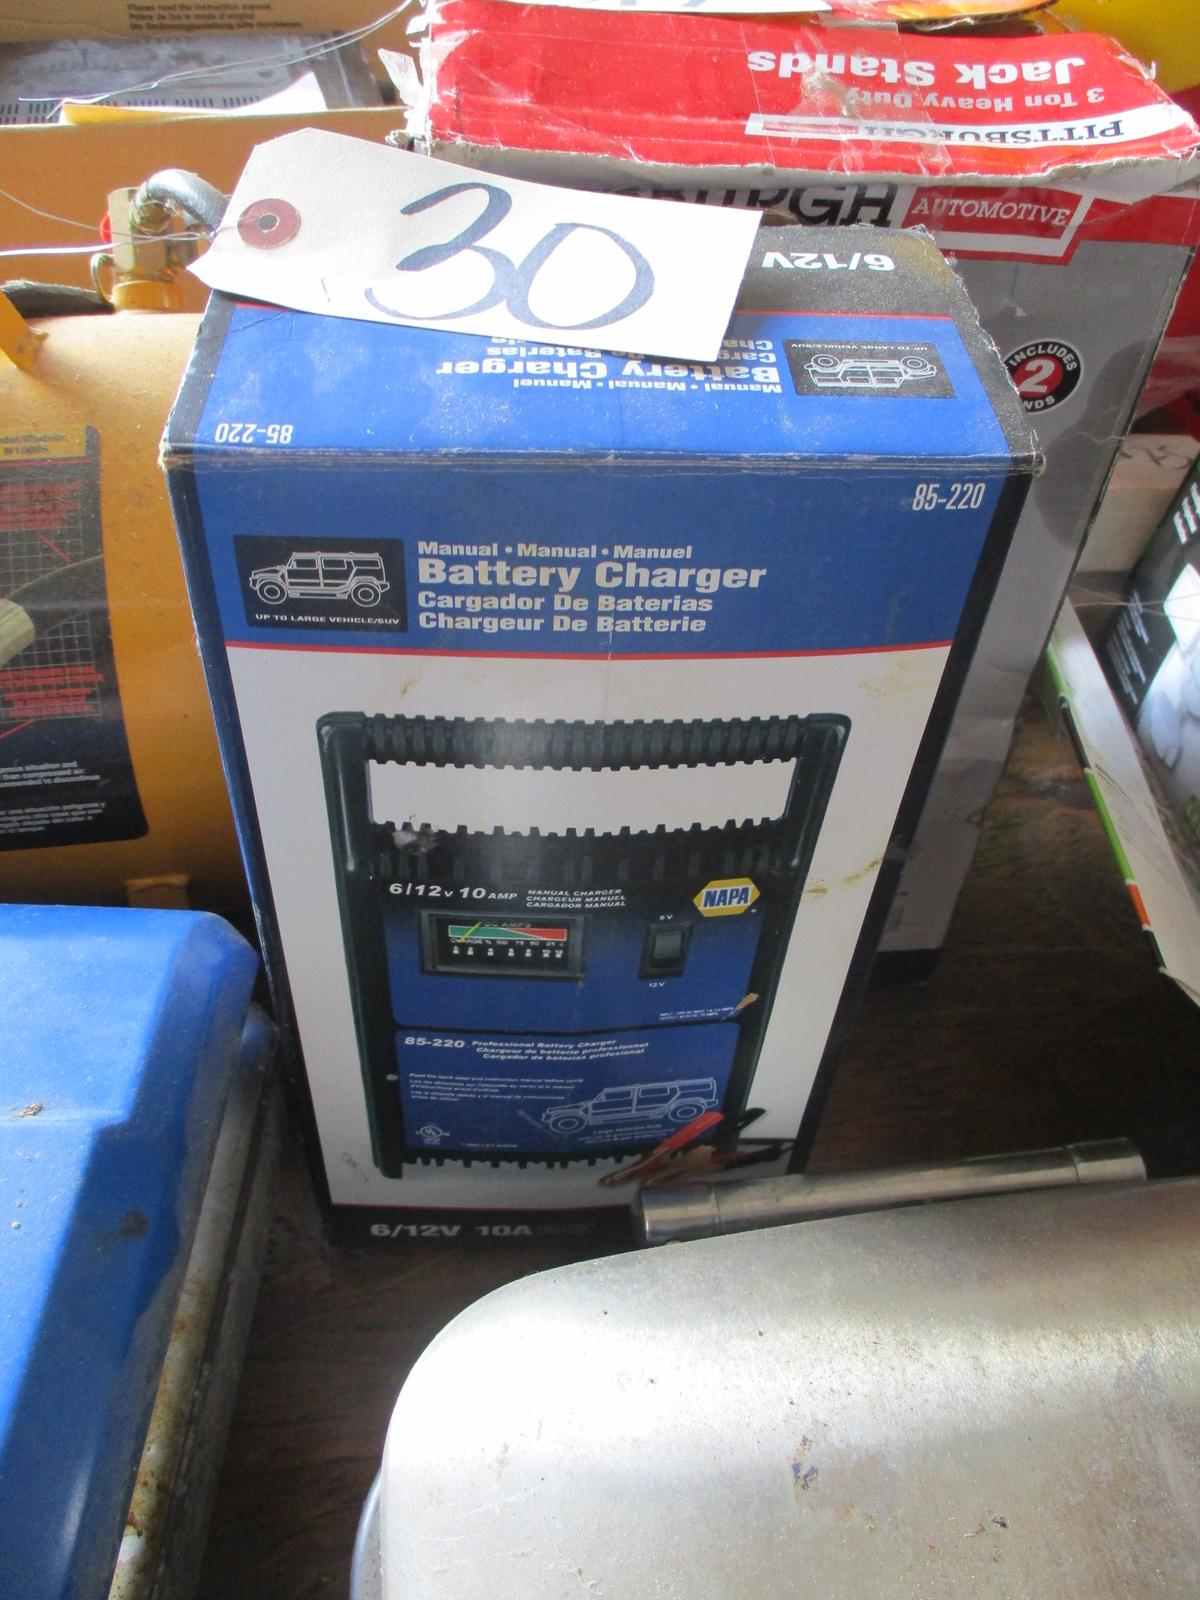 Napa manual abttery charger